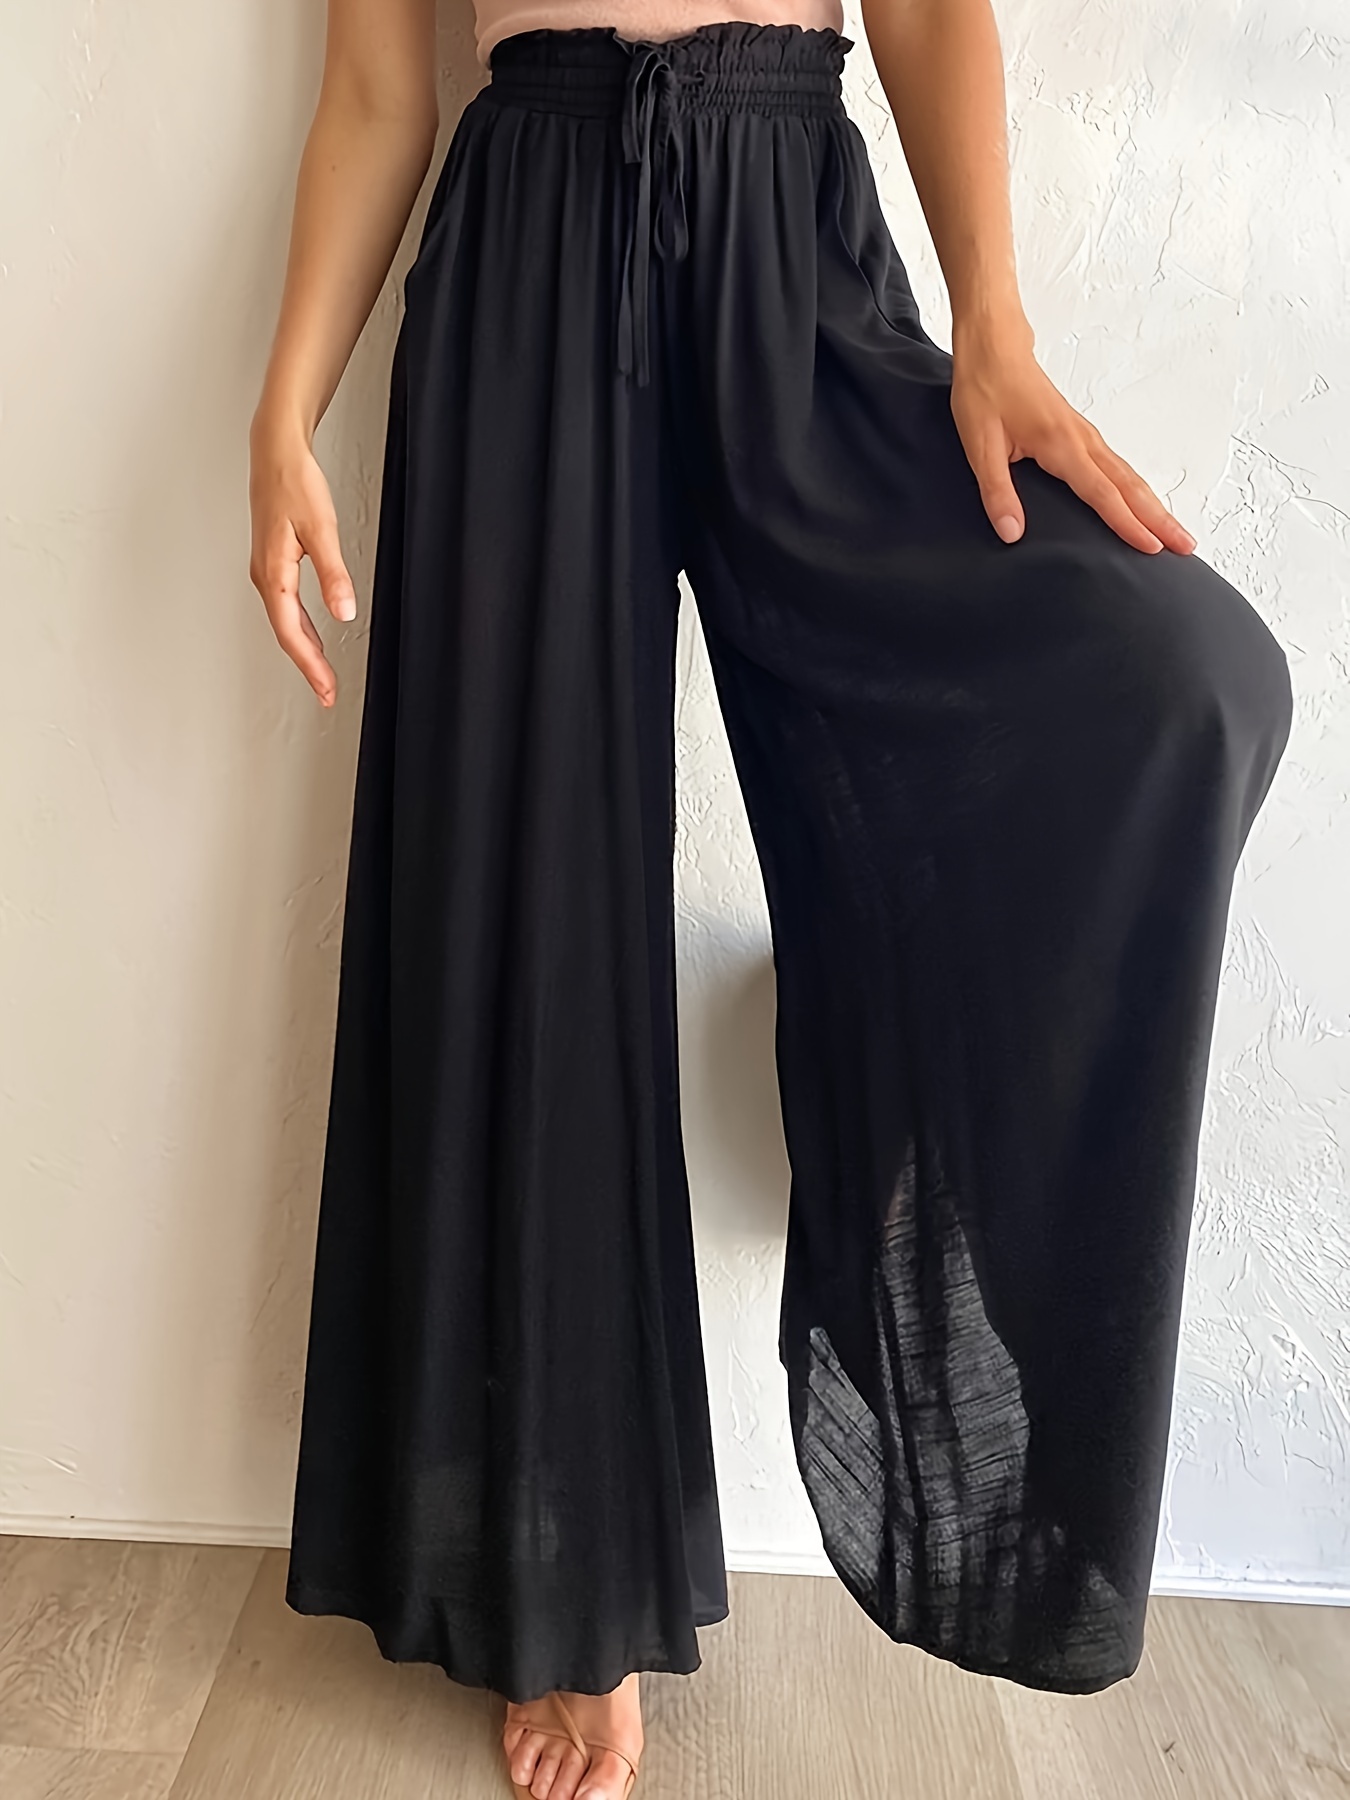 Pantaloni donna neri con fiocco